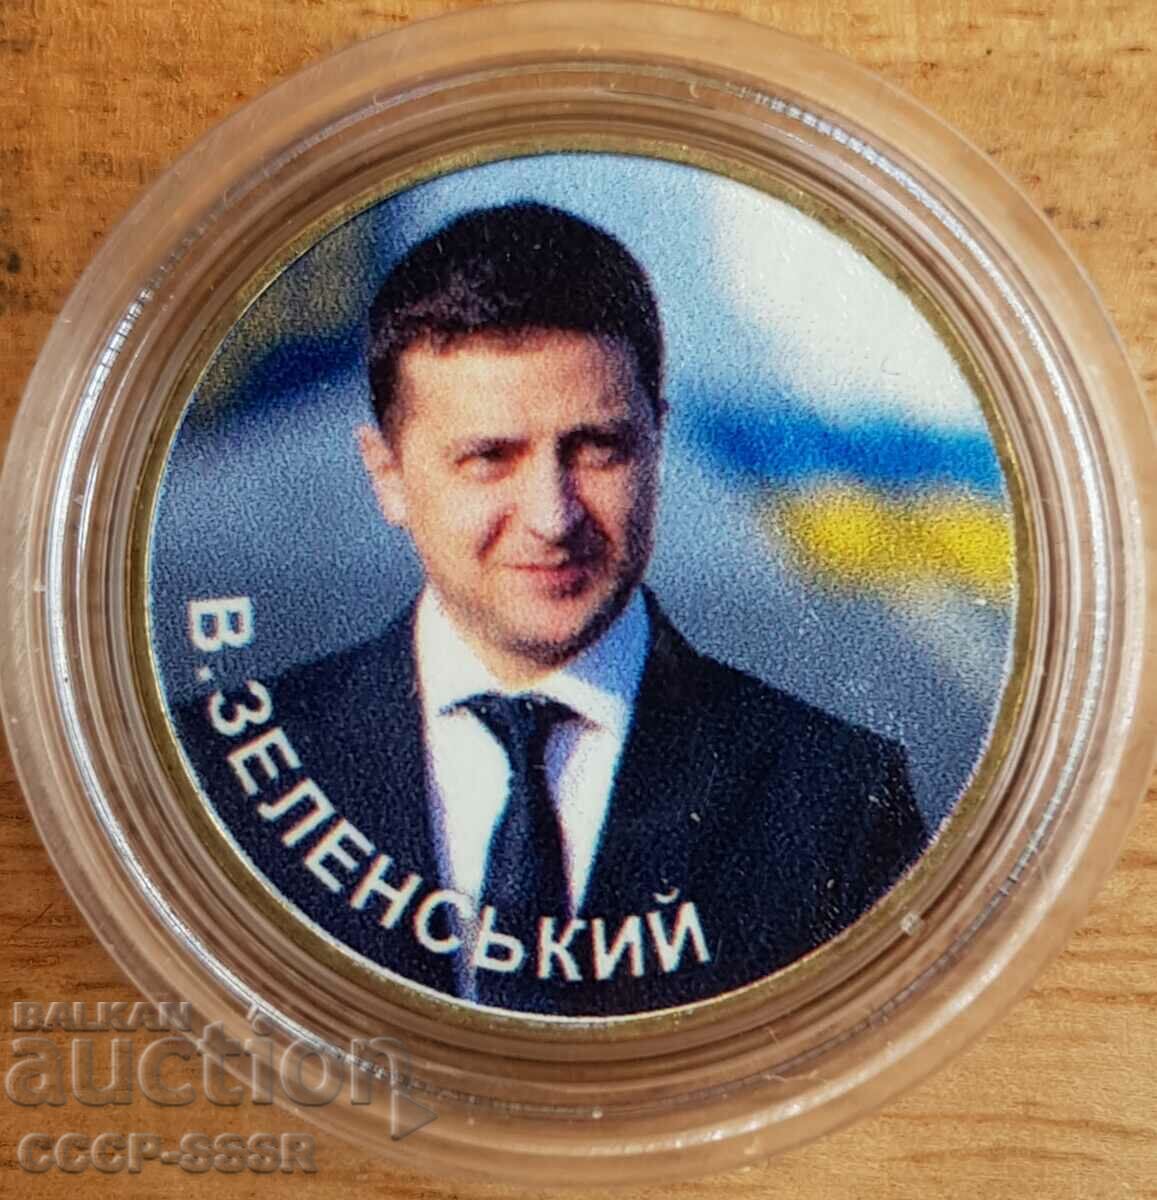 Ukraine 1 χαίτη, Zelensky V.A. President Ukraini, περιορισμένη έκδοση